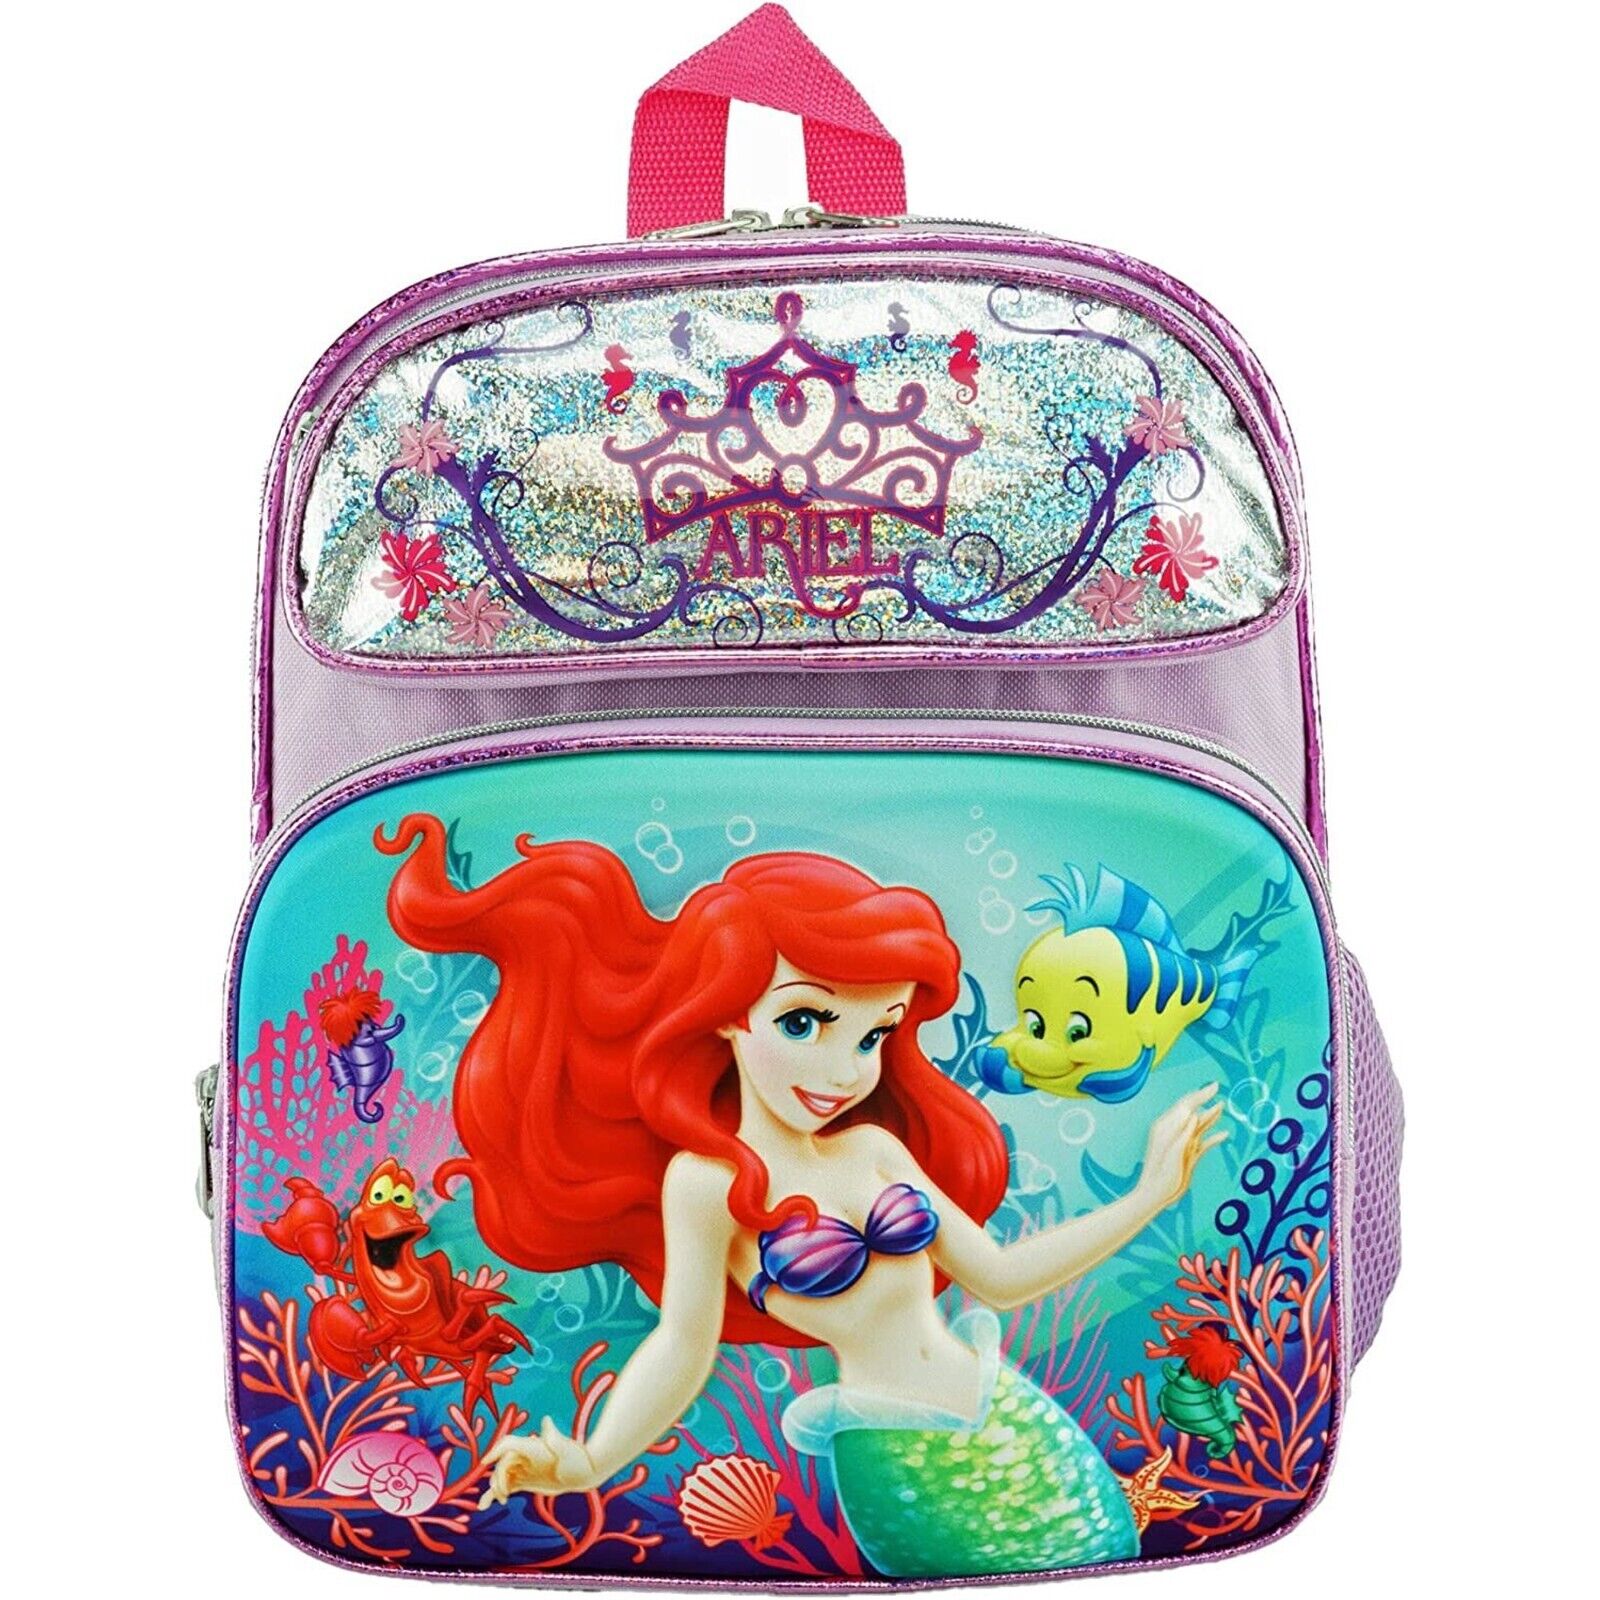 Little Mermaid 12" Backpack